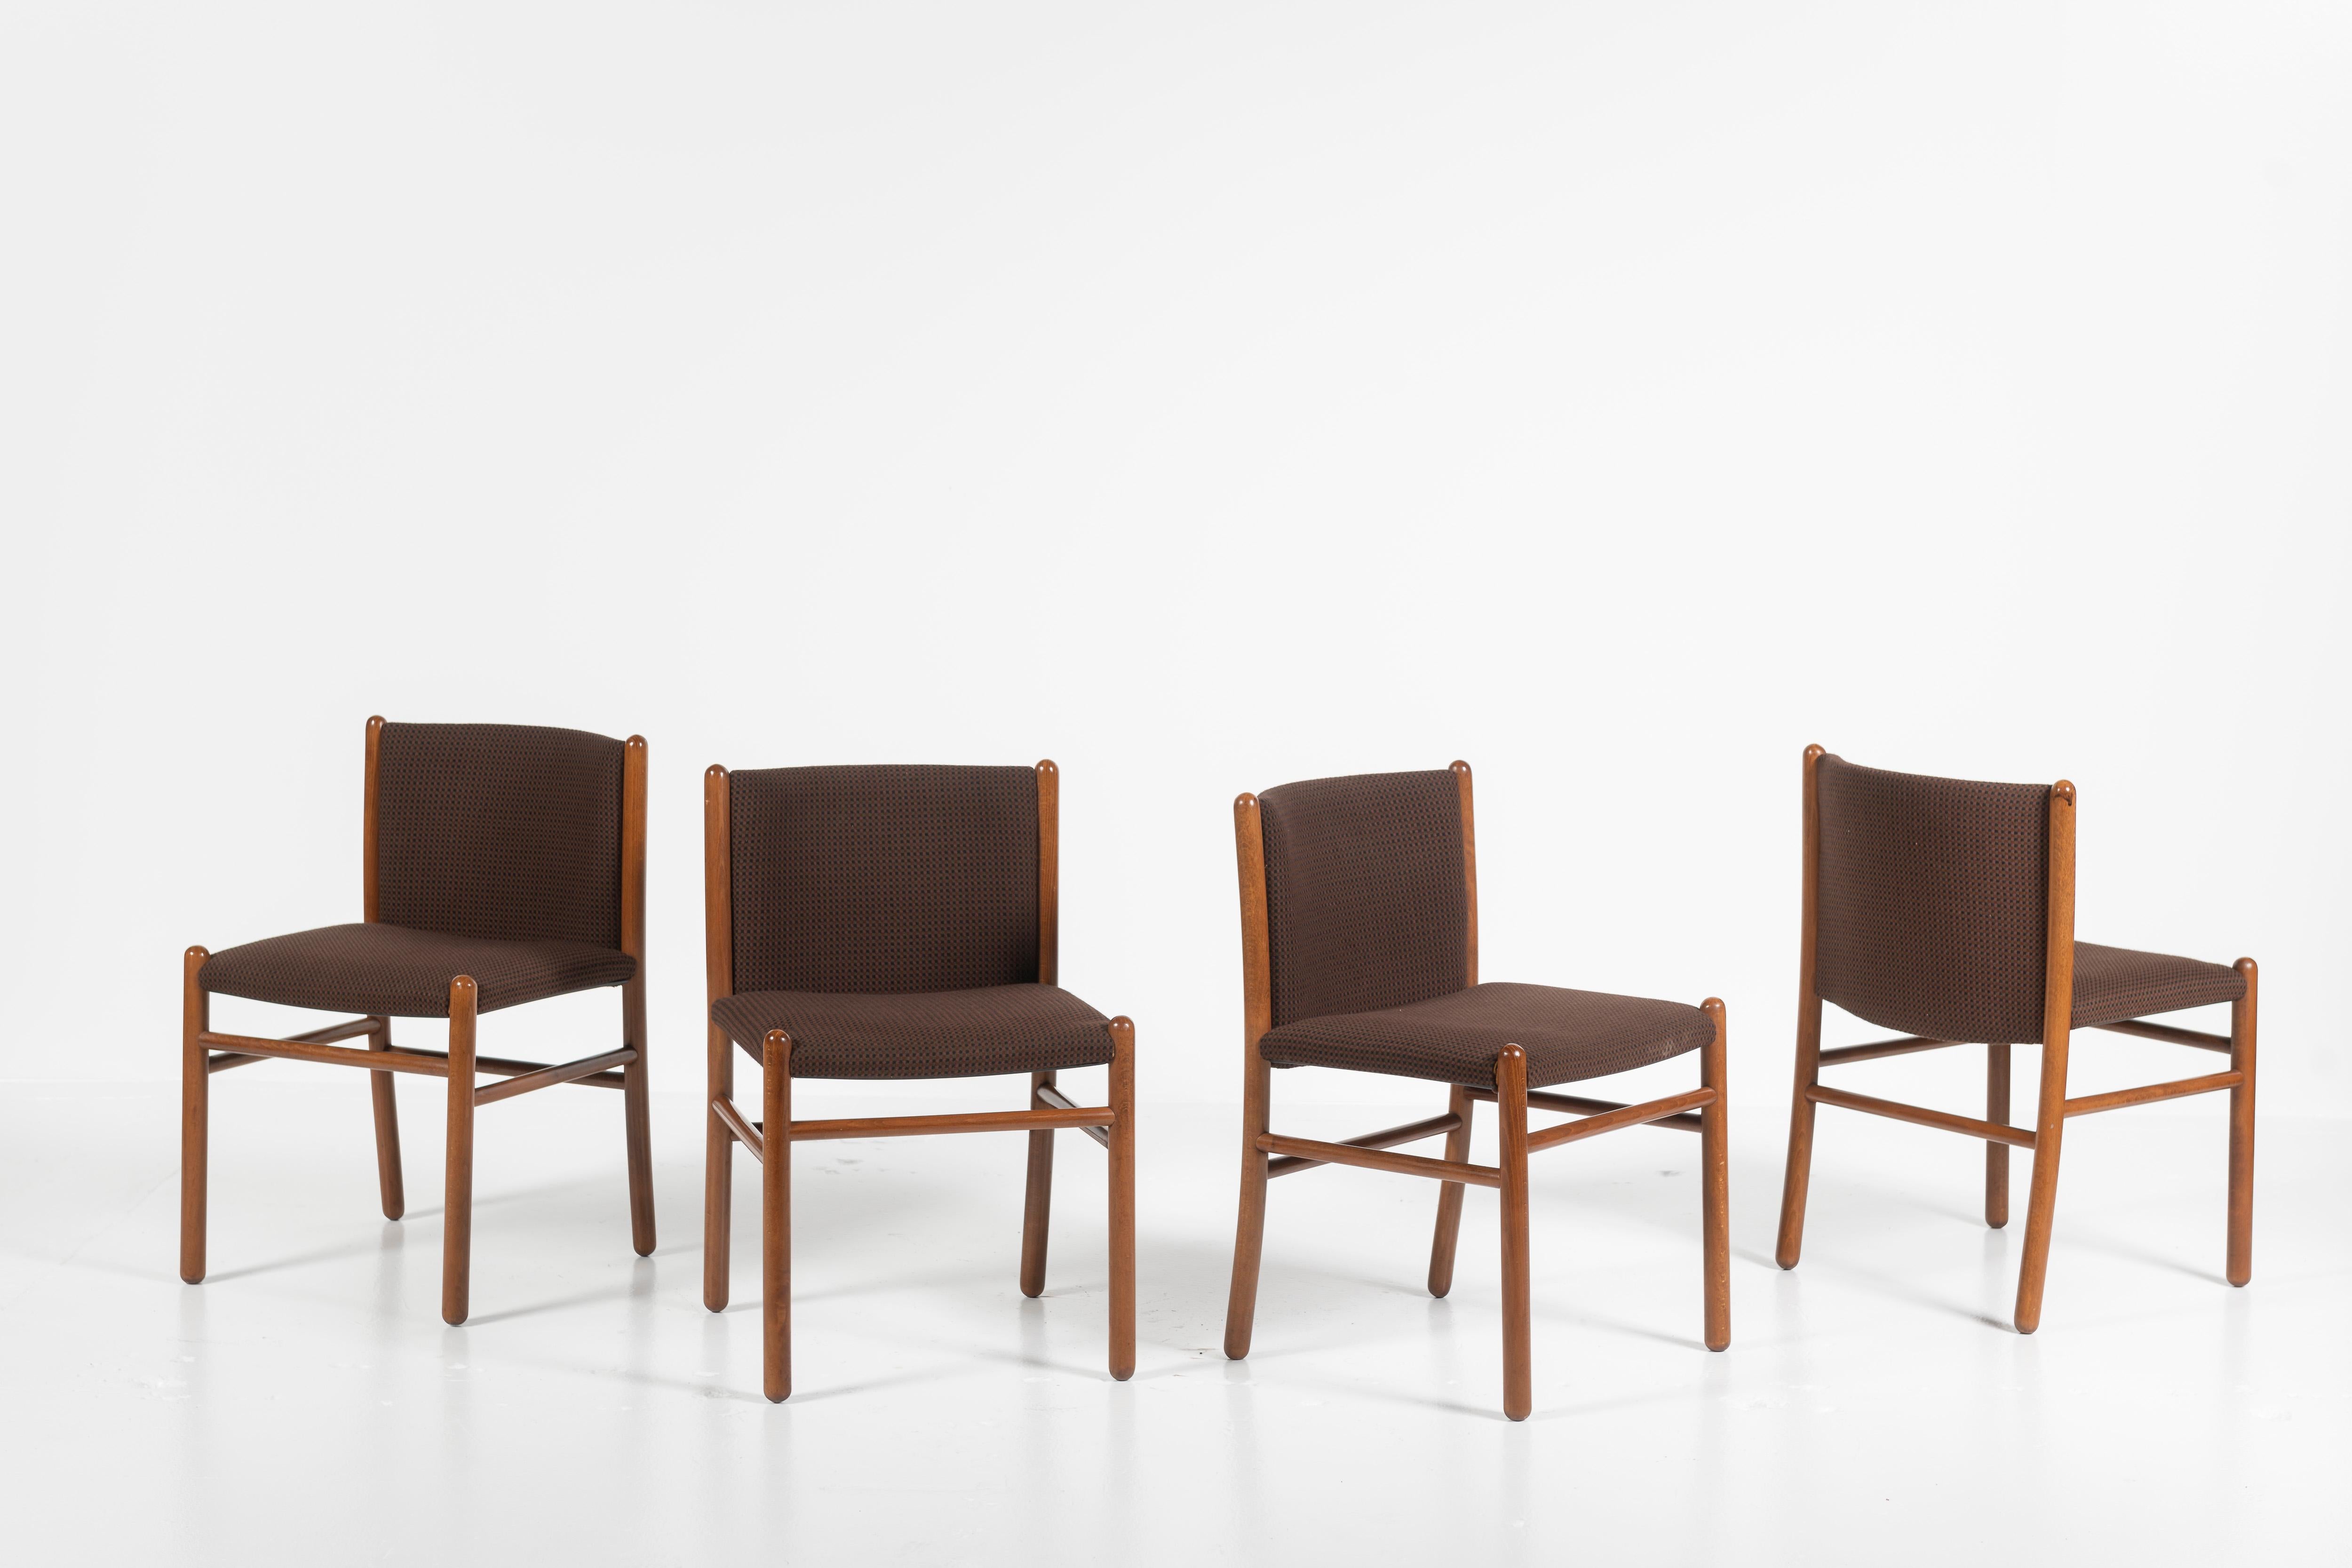 Vendues en lot de quatre, ces chaises de salle à manger, conçues par Gianfranco Frattini pour Lema S.P.A., Italie, sont en bon état, avec quelques rayures sur les pieds. Les chaises sont recouvertes d'un tissu d'origine, mais une nouvelle tapisserie